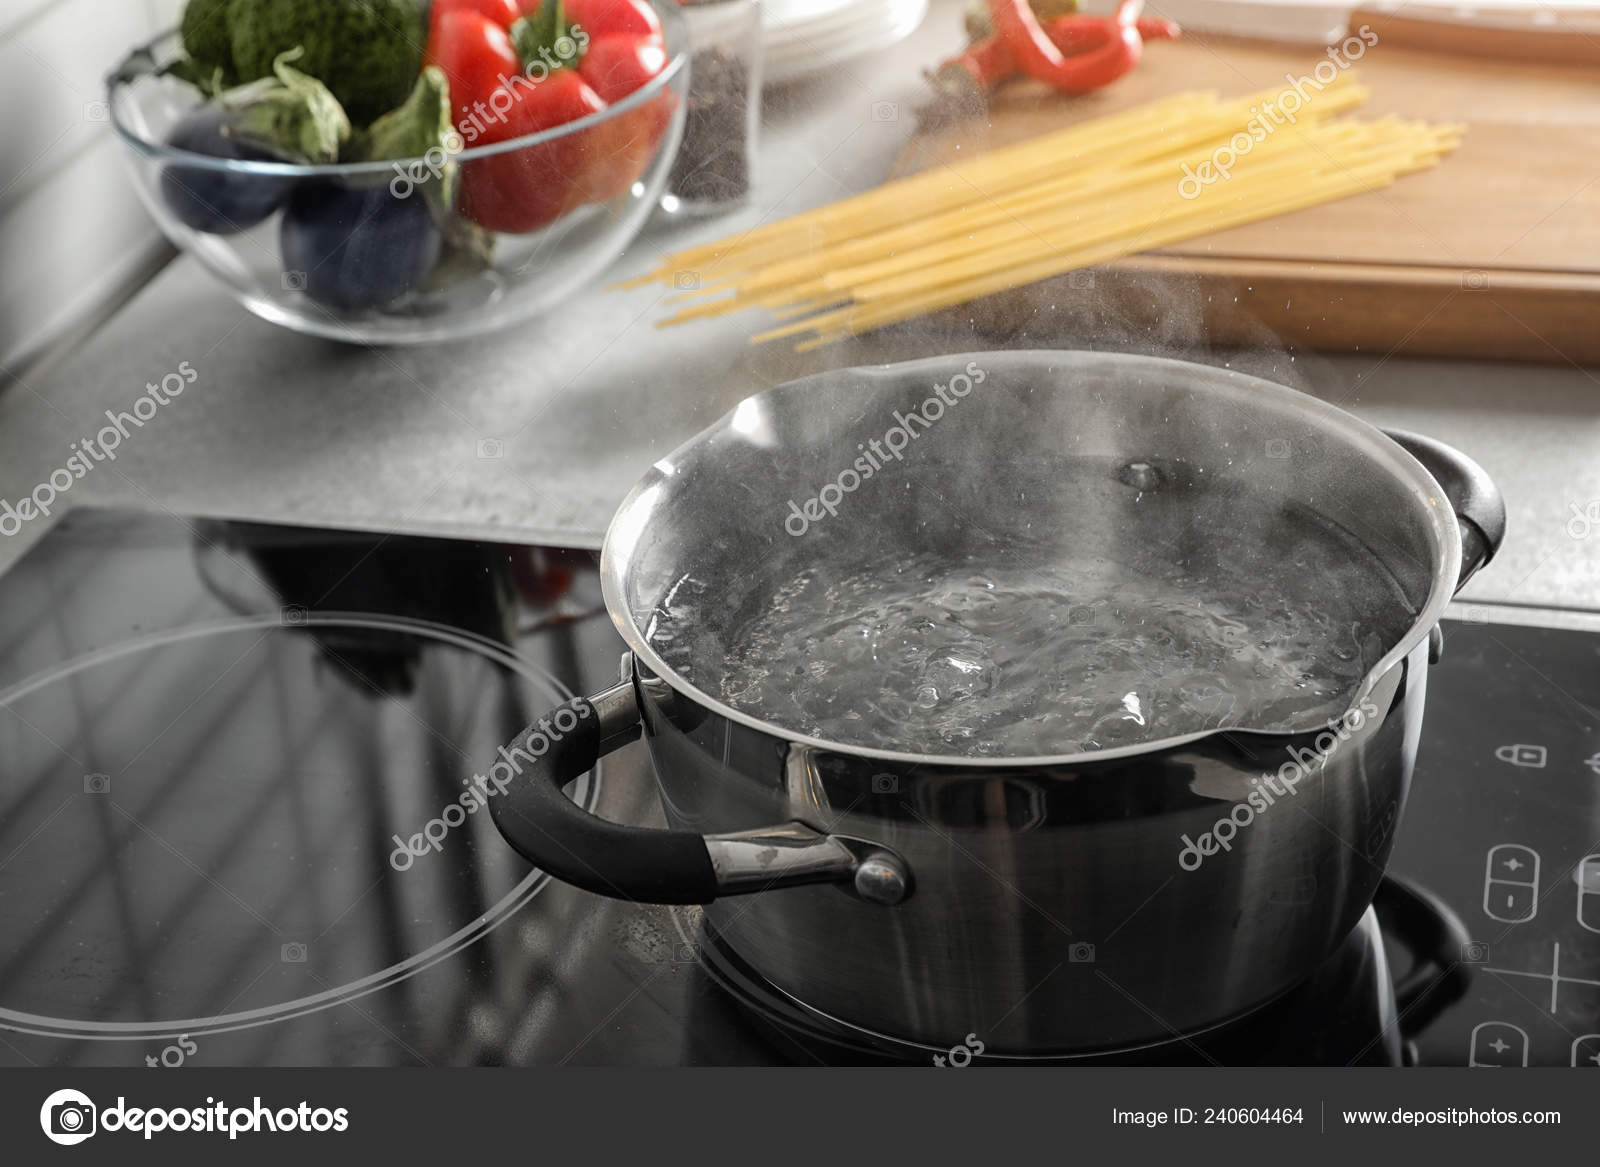 https://st4.depositphotos.com/16122460/24060/i/1600/depositphotos_240604464-stock-photo-pot-boiling-water-electric-stove.jpg